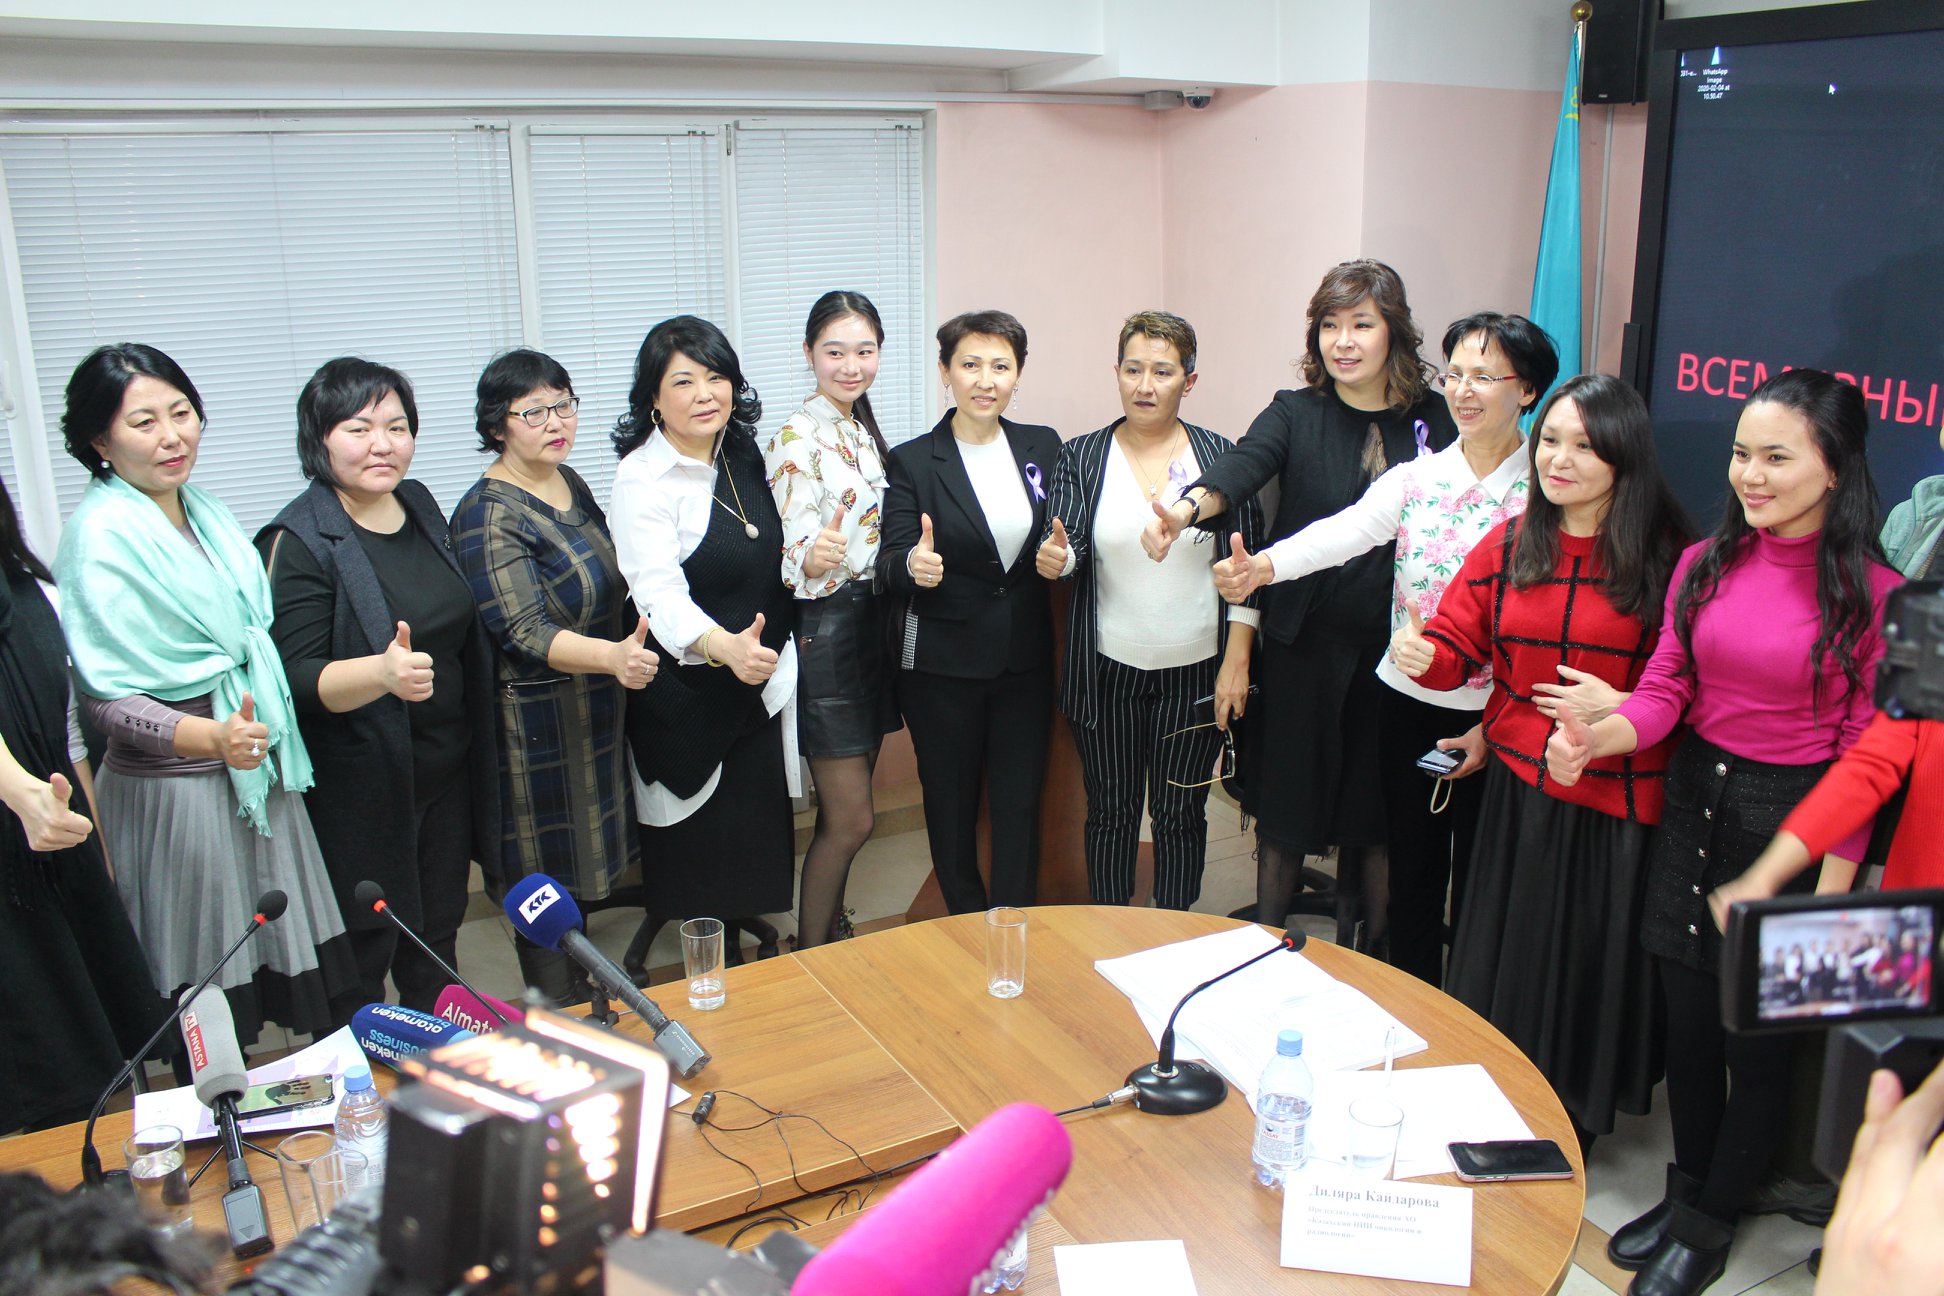 4 февраля в Казахском НИИ онкологии и радиологии состоялось большое мероприятие ко Всемирному дню борьбы против рака